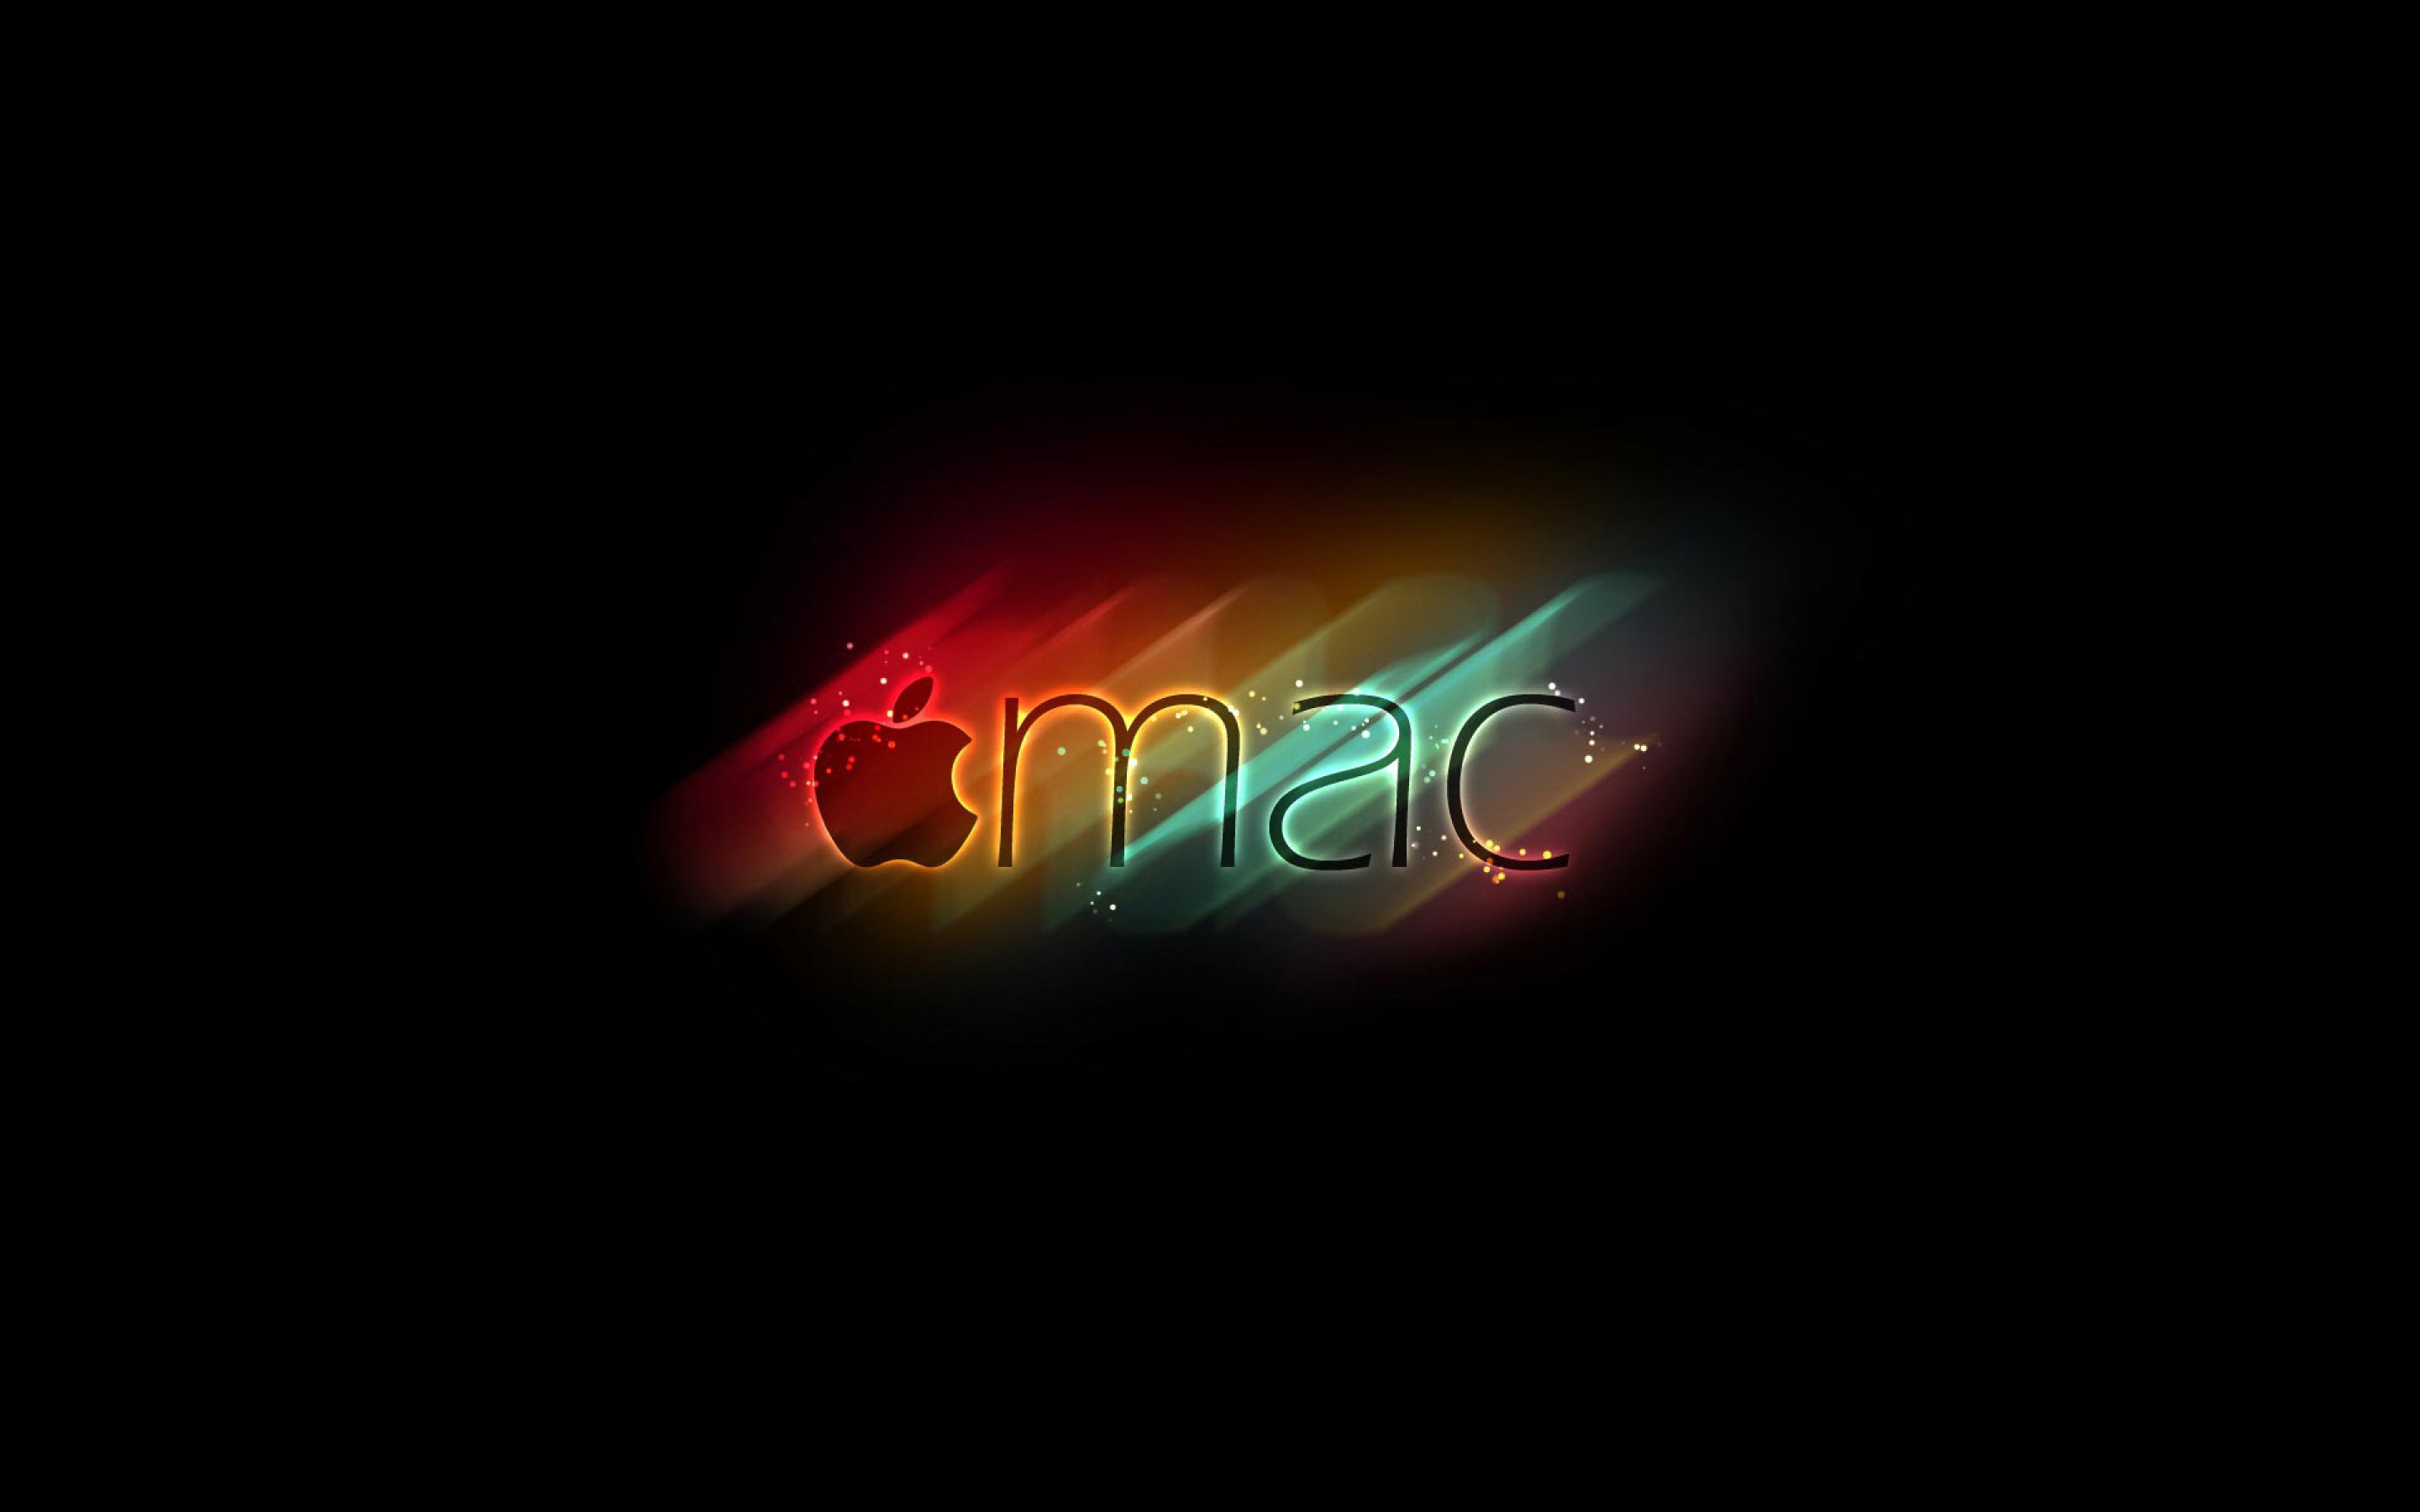 Khám phá hình nền động hiệu ứng cầu vồng logo Apple đen đầy sáng tạo! Được thiết kế bởi các chuyên gia về đồ họa, hình nền này sẽ mang đến cho máy tính của bạn một vẻ ngoài đầy phong cách và hiện đại. Hãy thử xem ngay nhé!